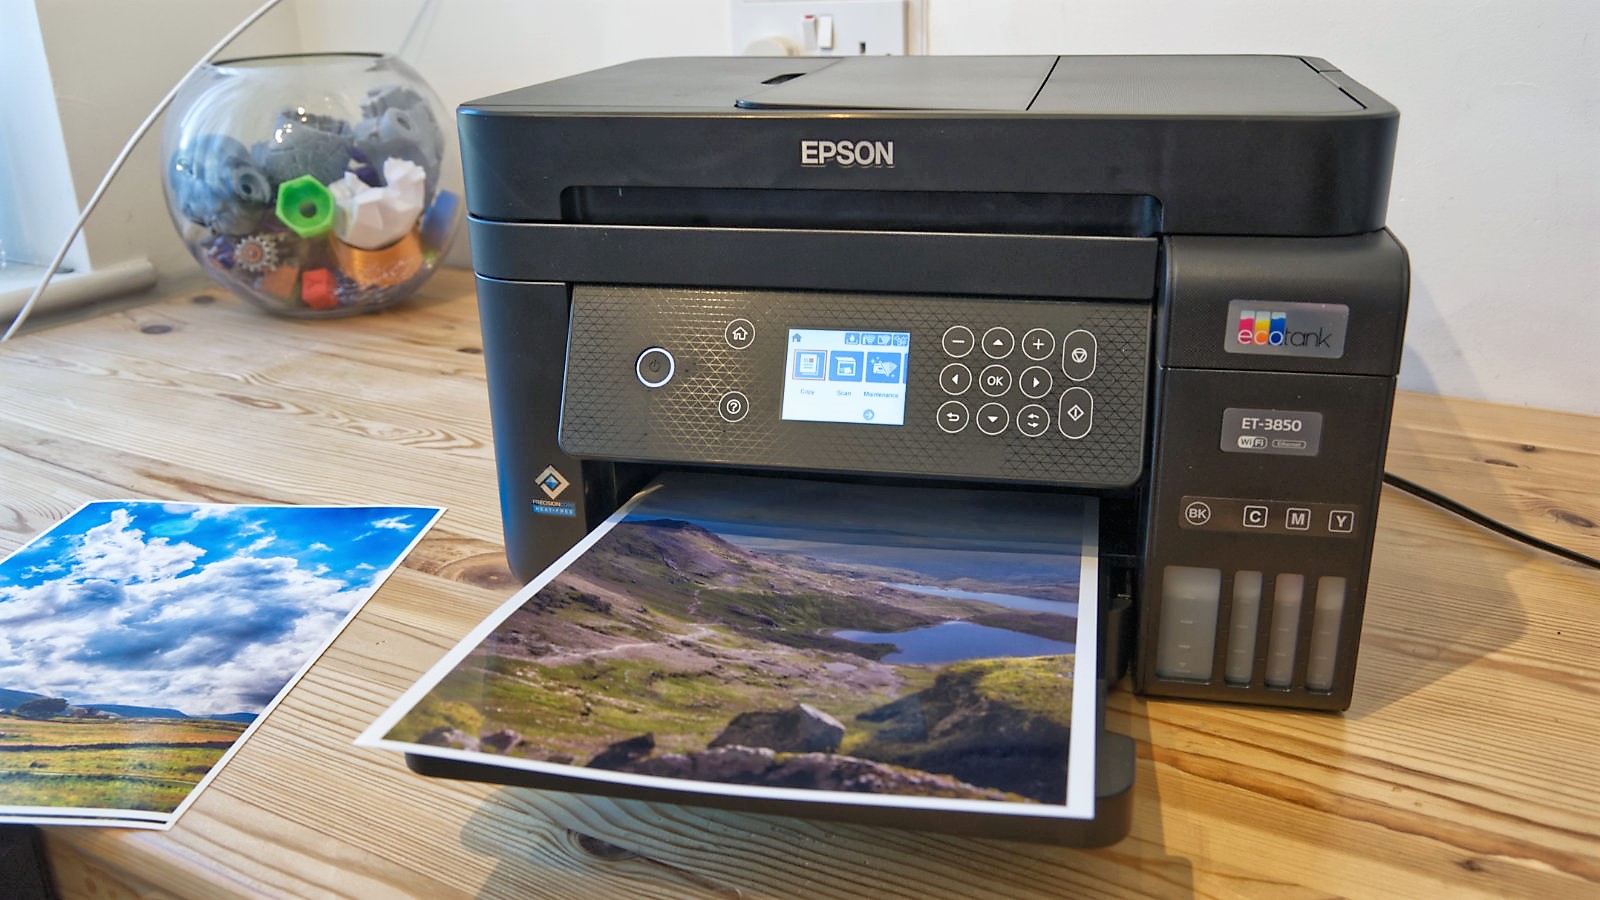 Epson EcoTank ET-3850 - Best Ink Tank Printer